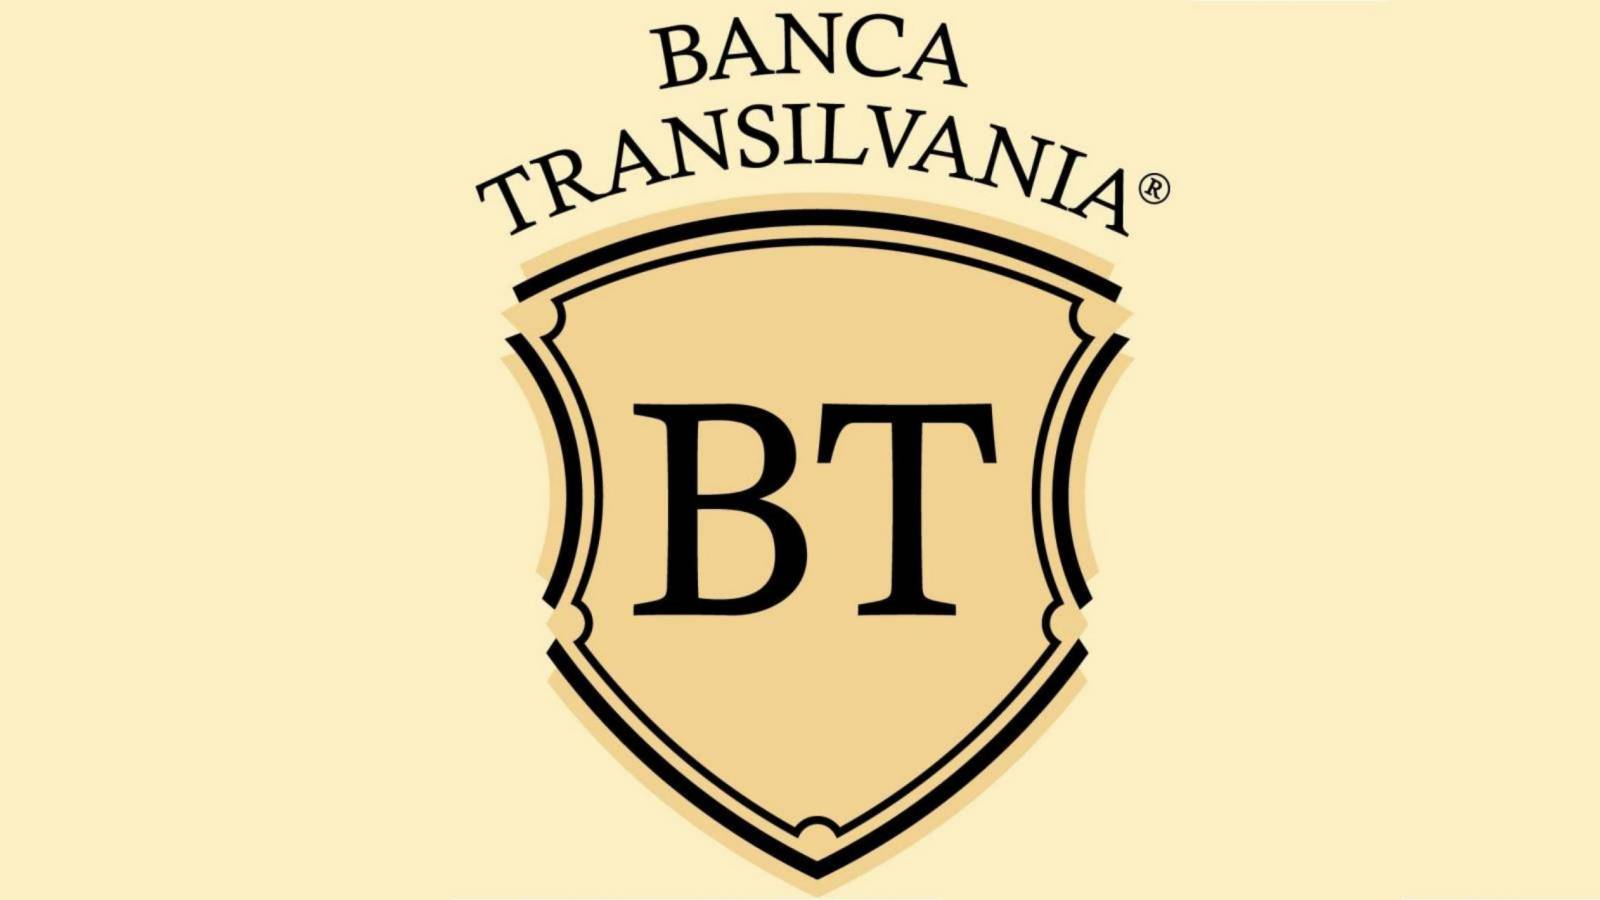 BANCA Transilvania transmitted